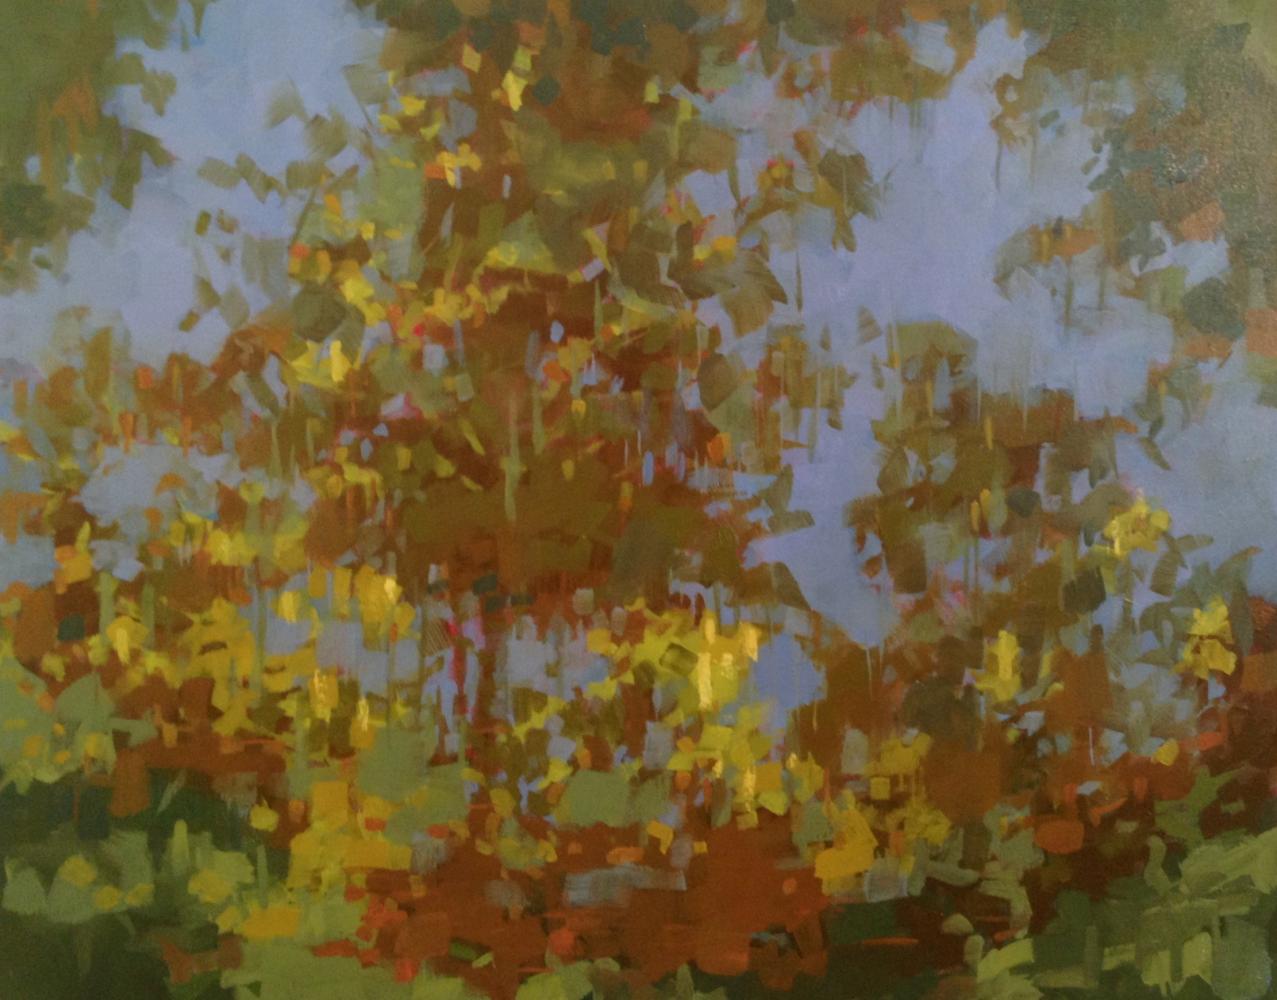 "September Reflections", oil on linen, 24x30